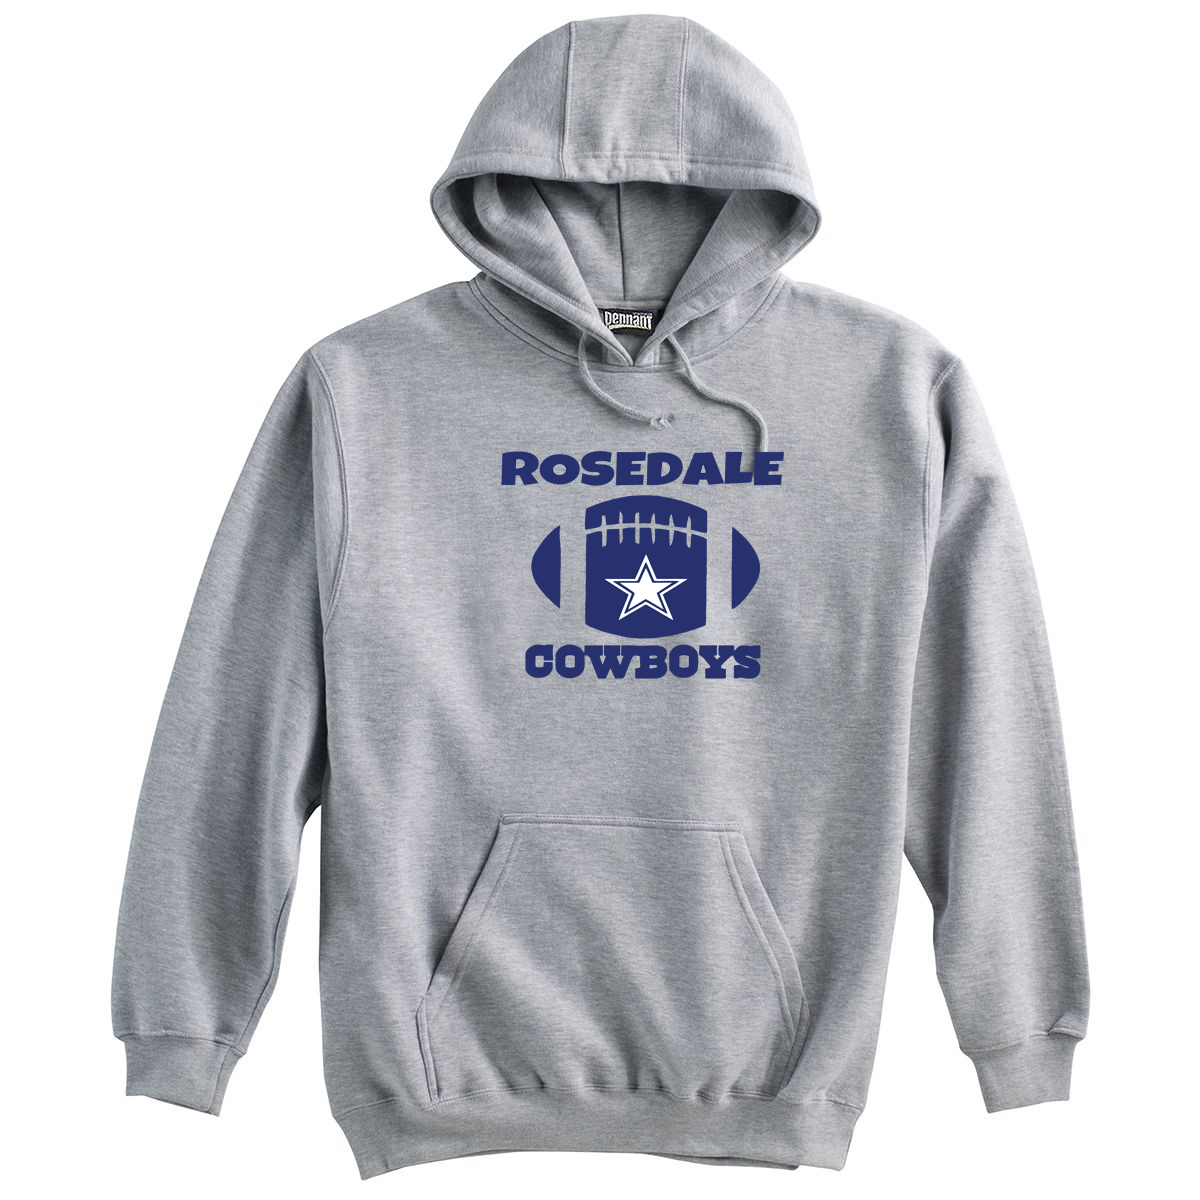 Rosedale Cowboys Sweatshirt